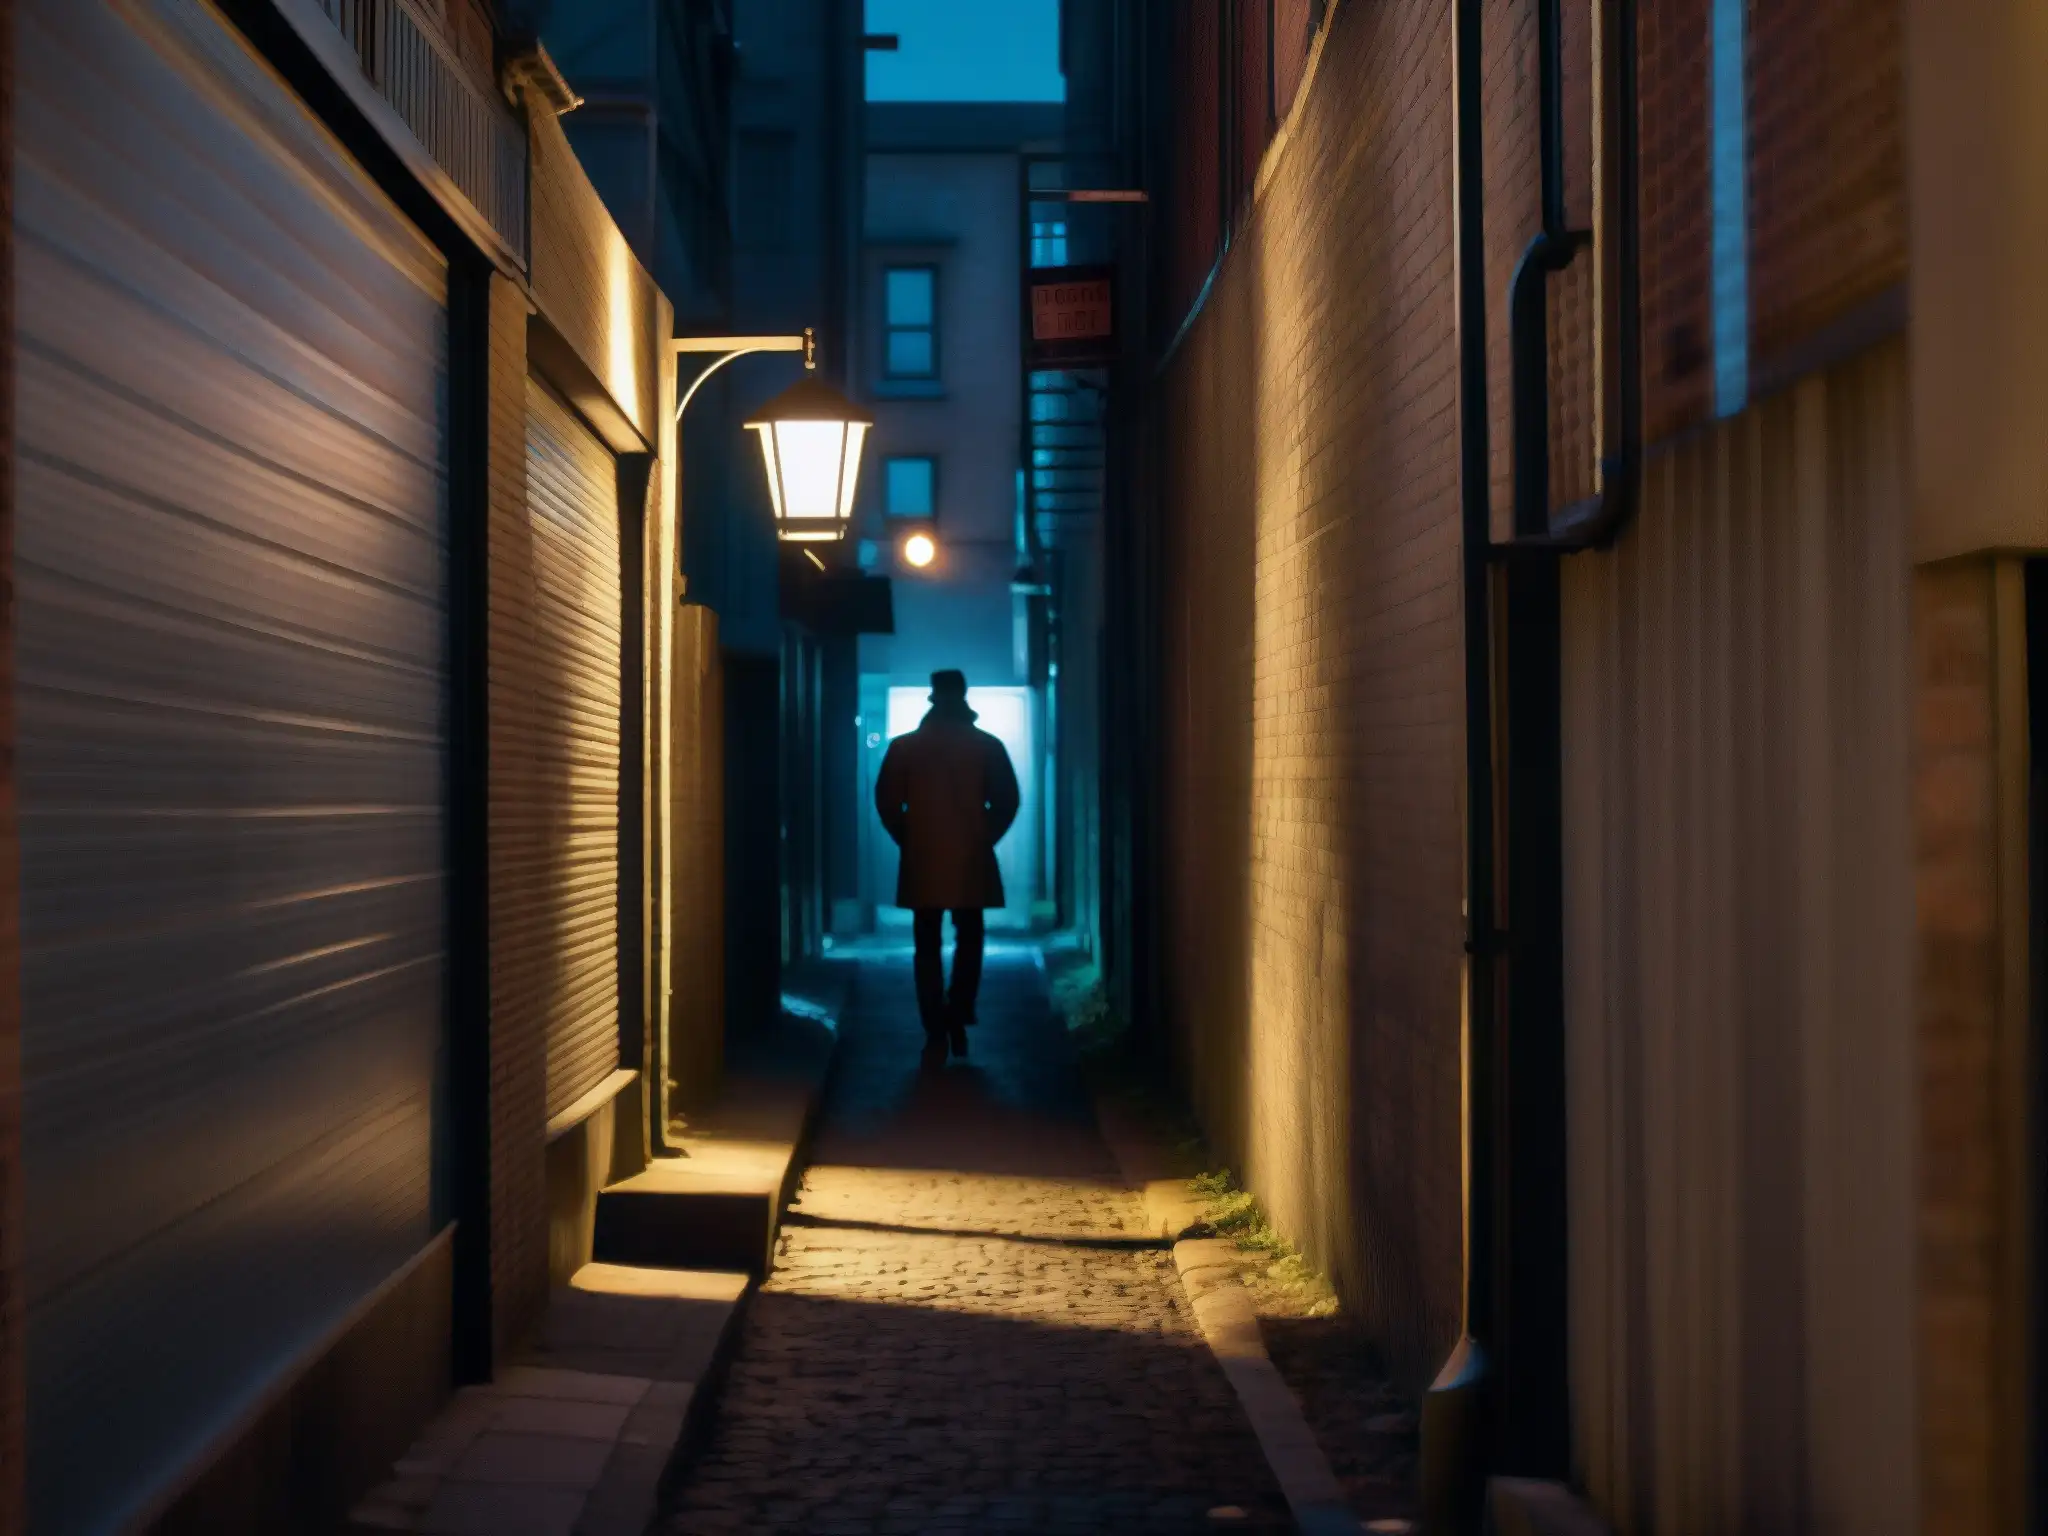 Un callejón misterioso y tenebroso de noche, con una figura en la distancia, creando un ambiente escalofriante